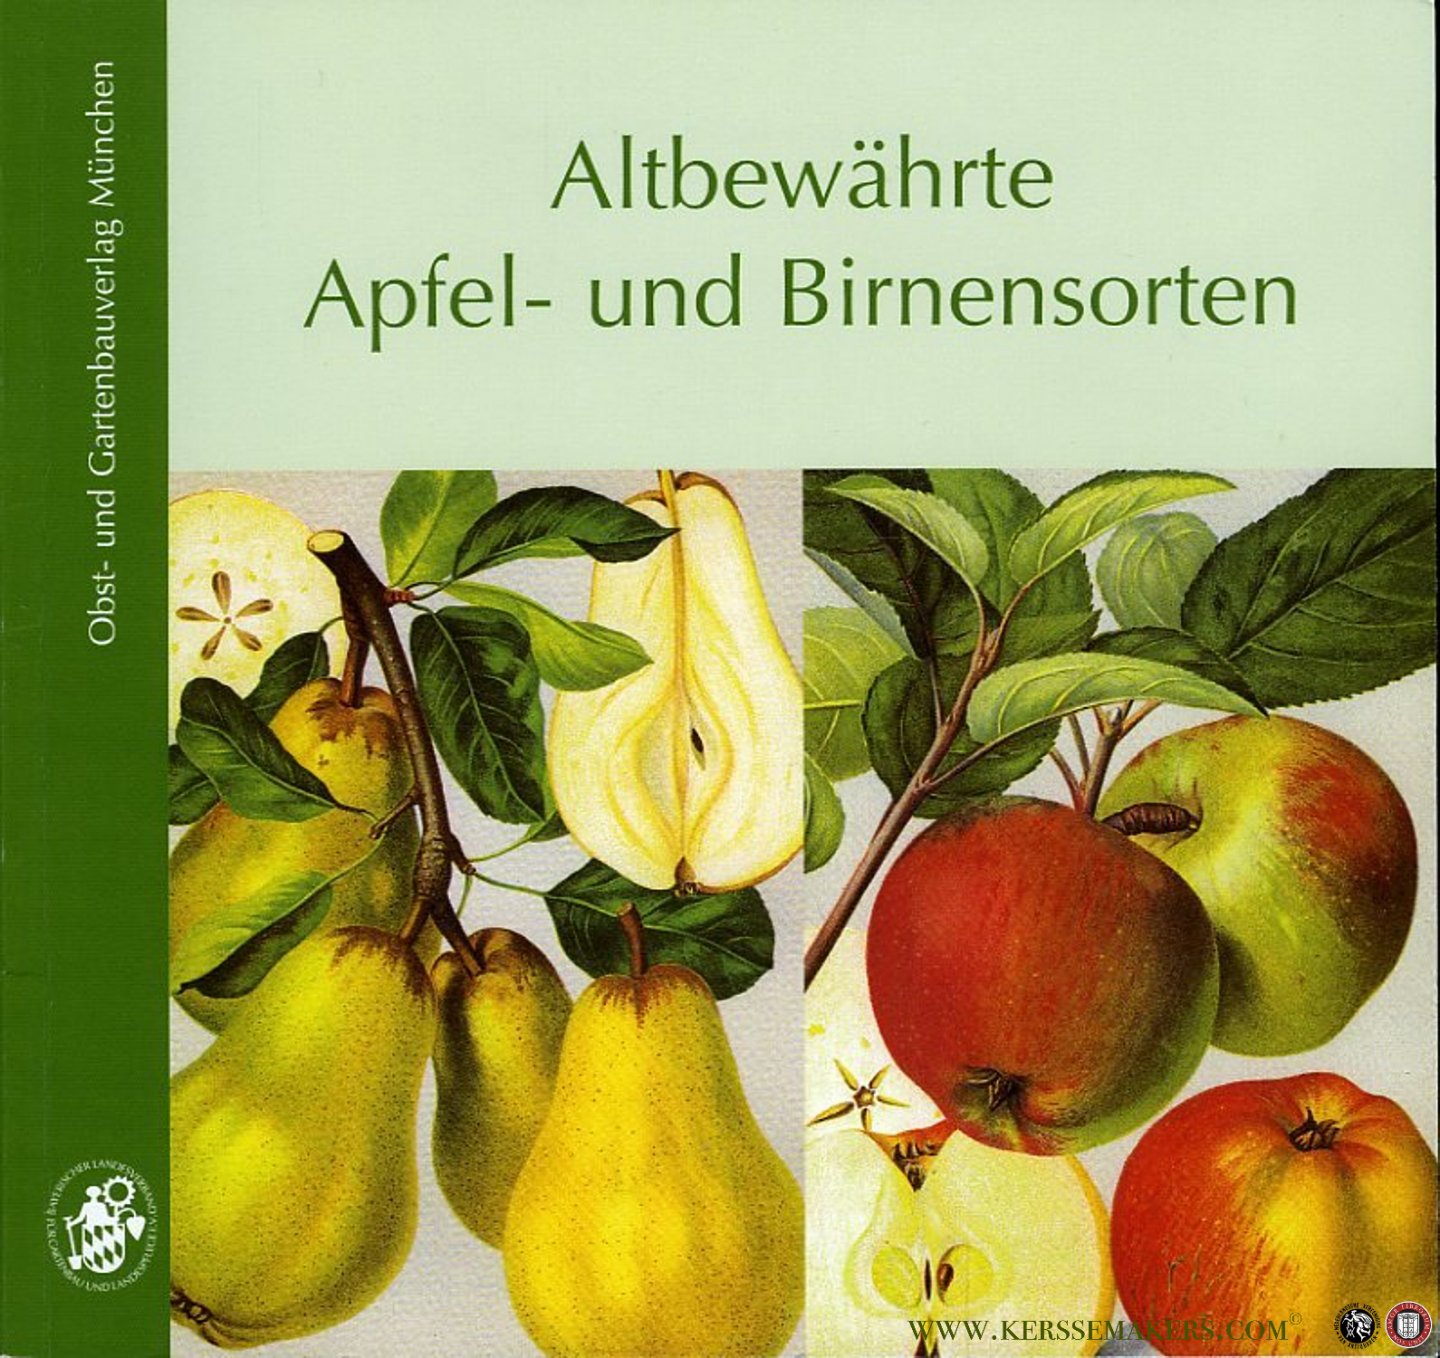 VOTTELER, Willi - Altbewährte Apfel- und Birnensorten